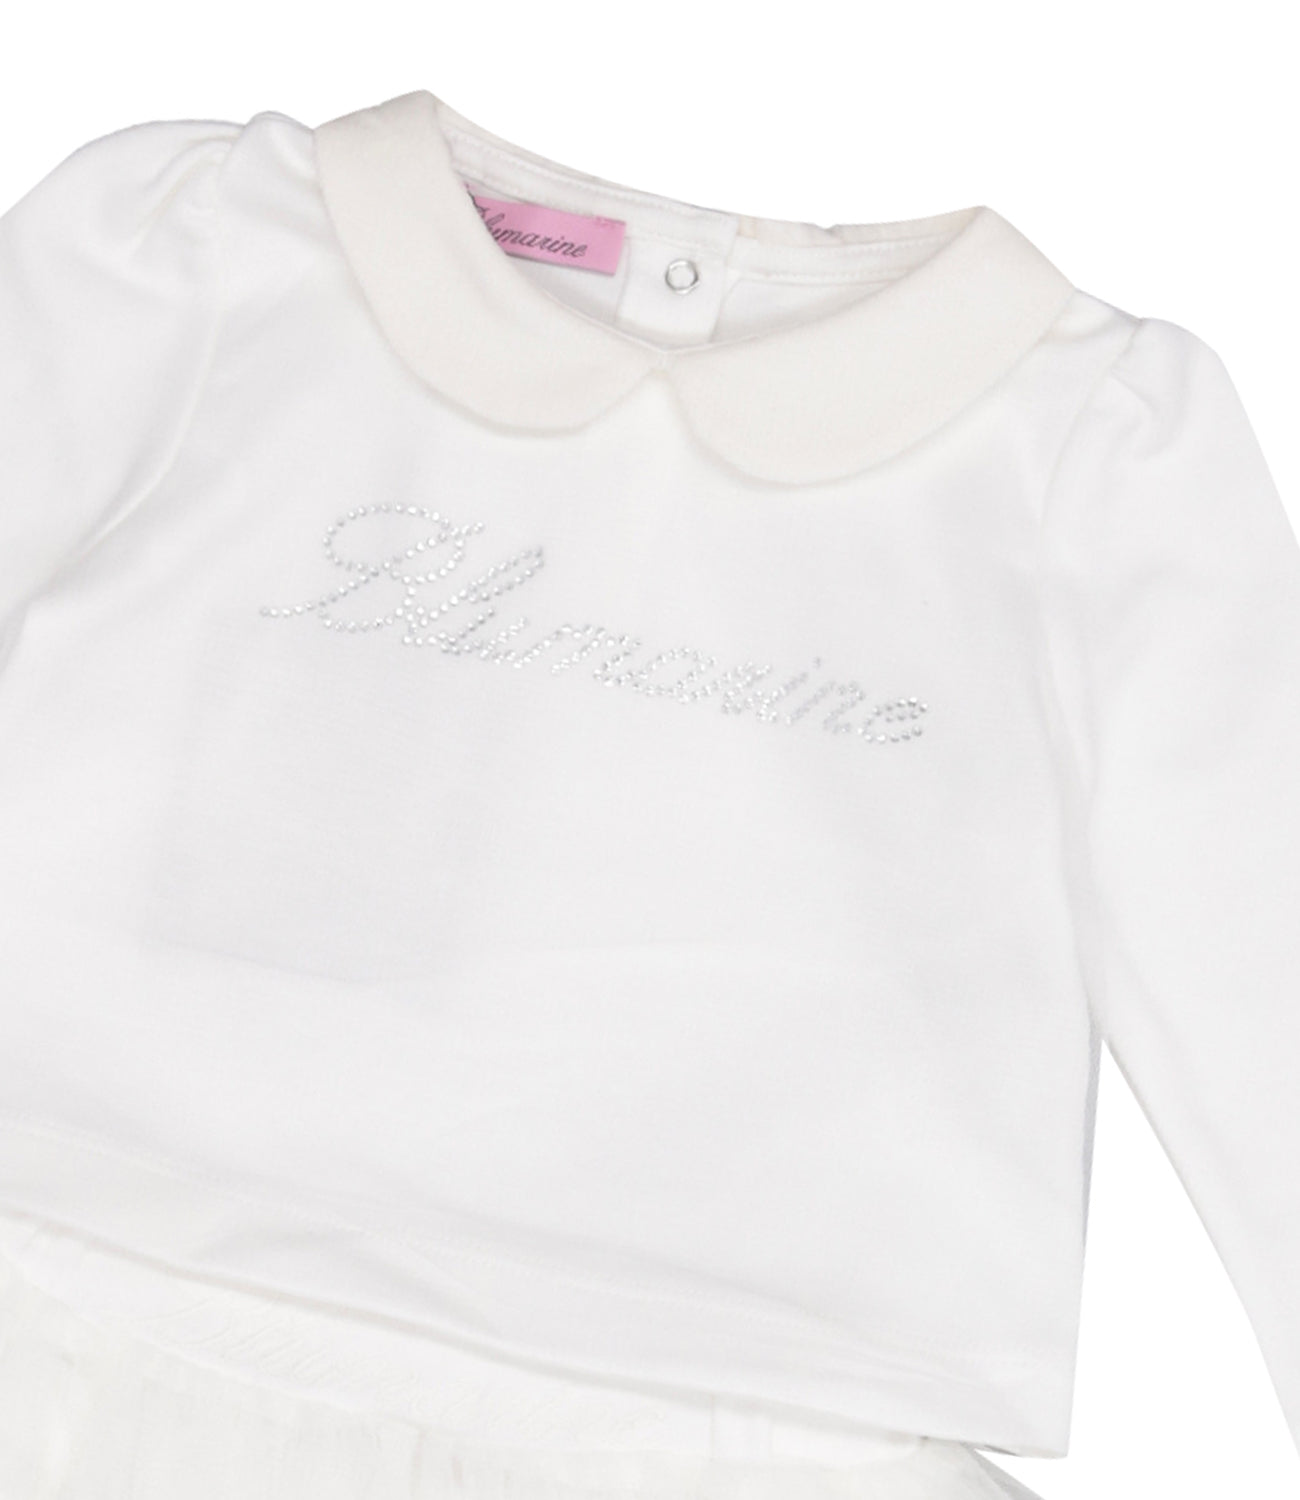 Miss Blumarine | Sweater and Skirt Set White